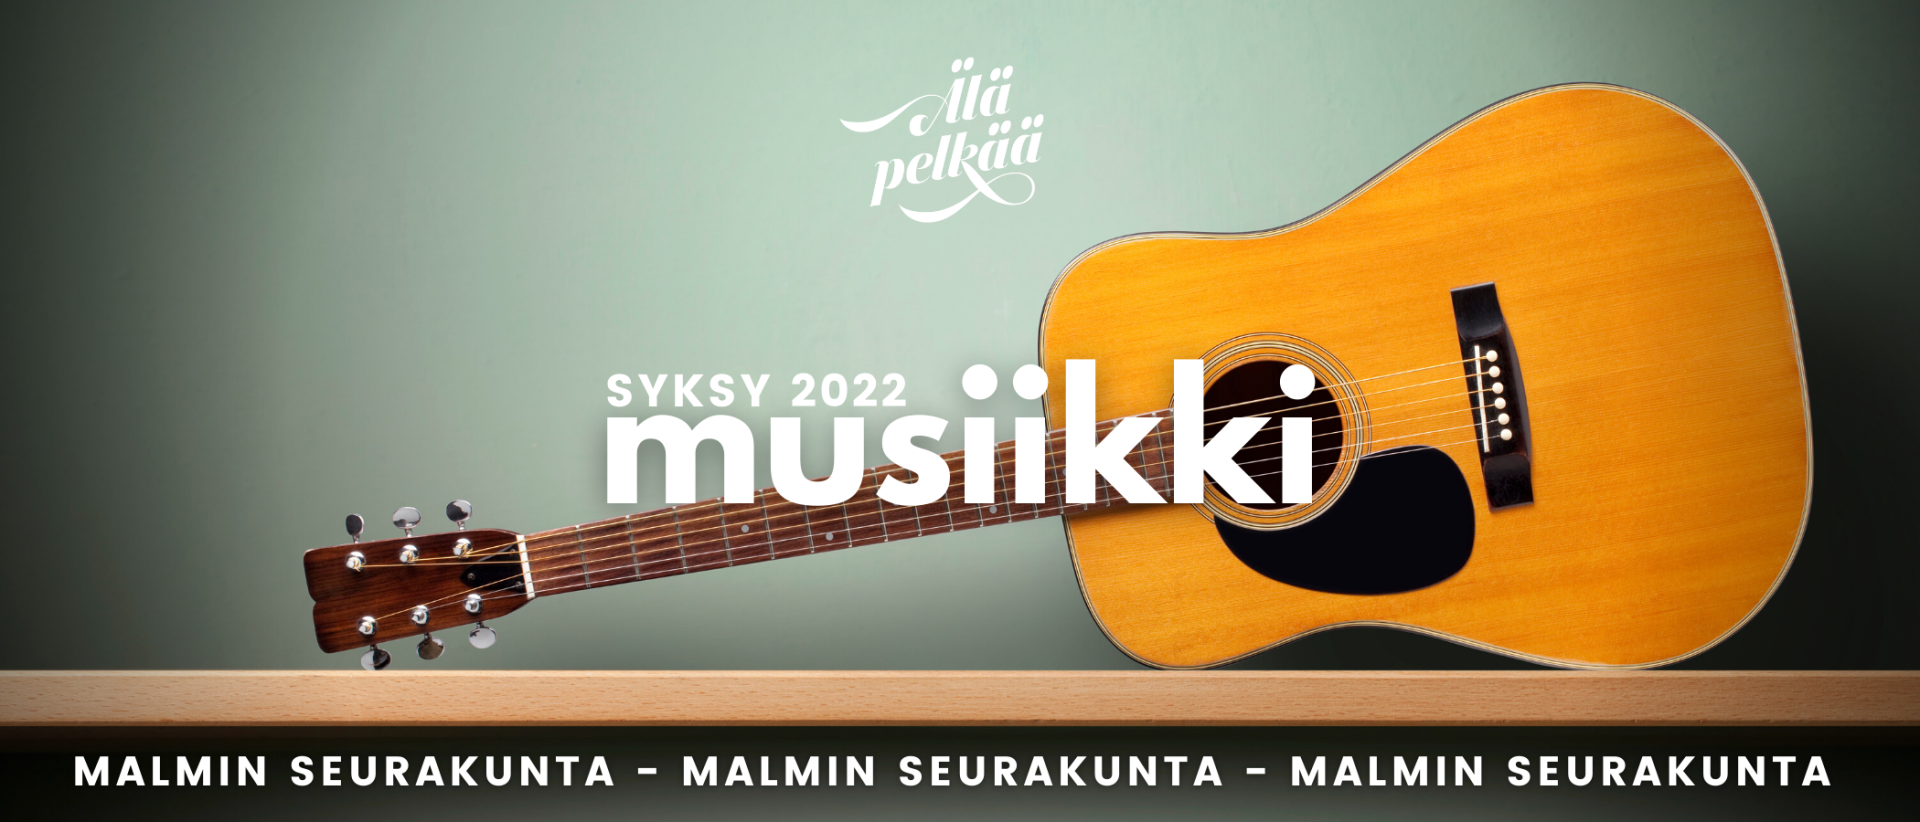 Kitaran kuva ja teksti Malmin seurakunta musiikki syksy 2022